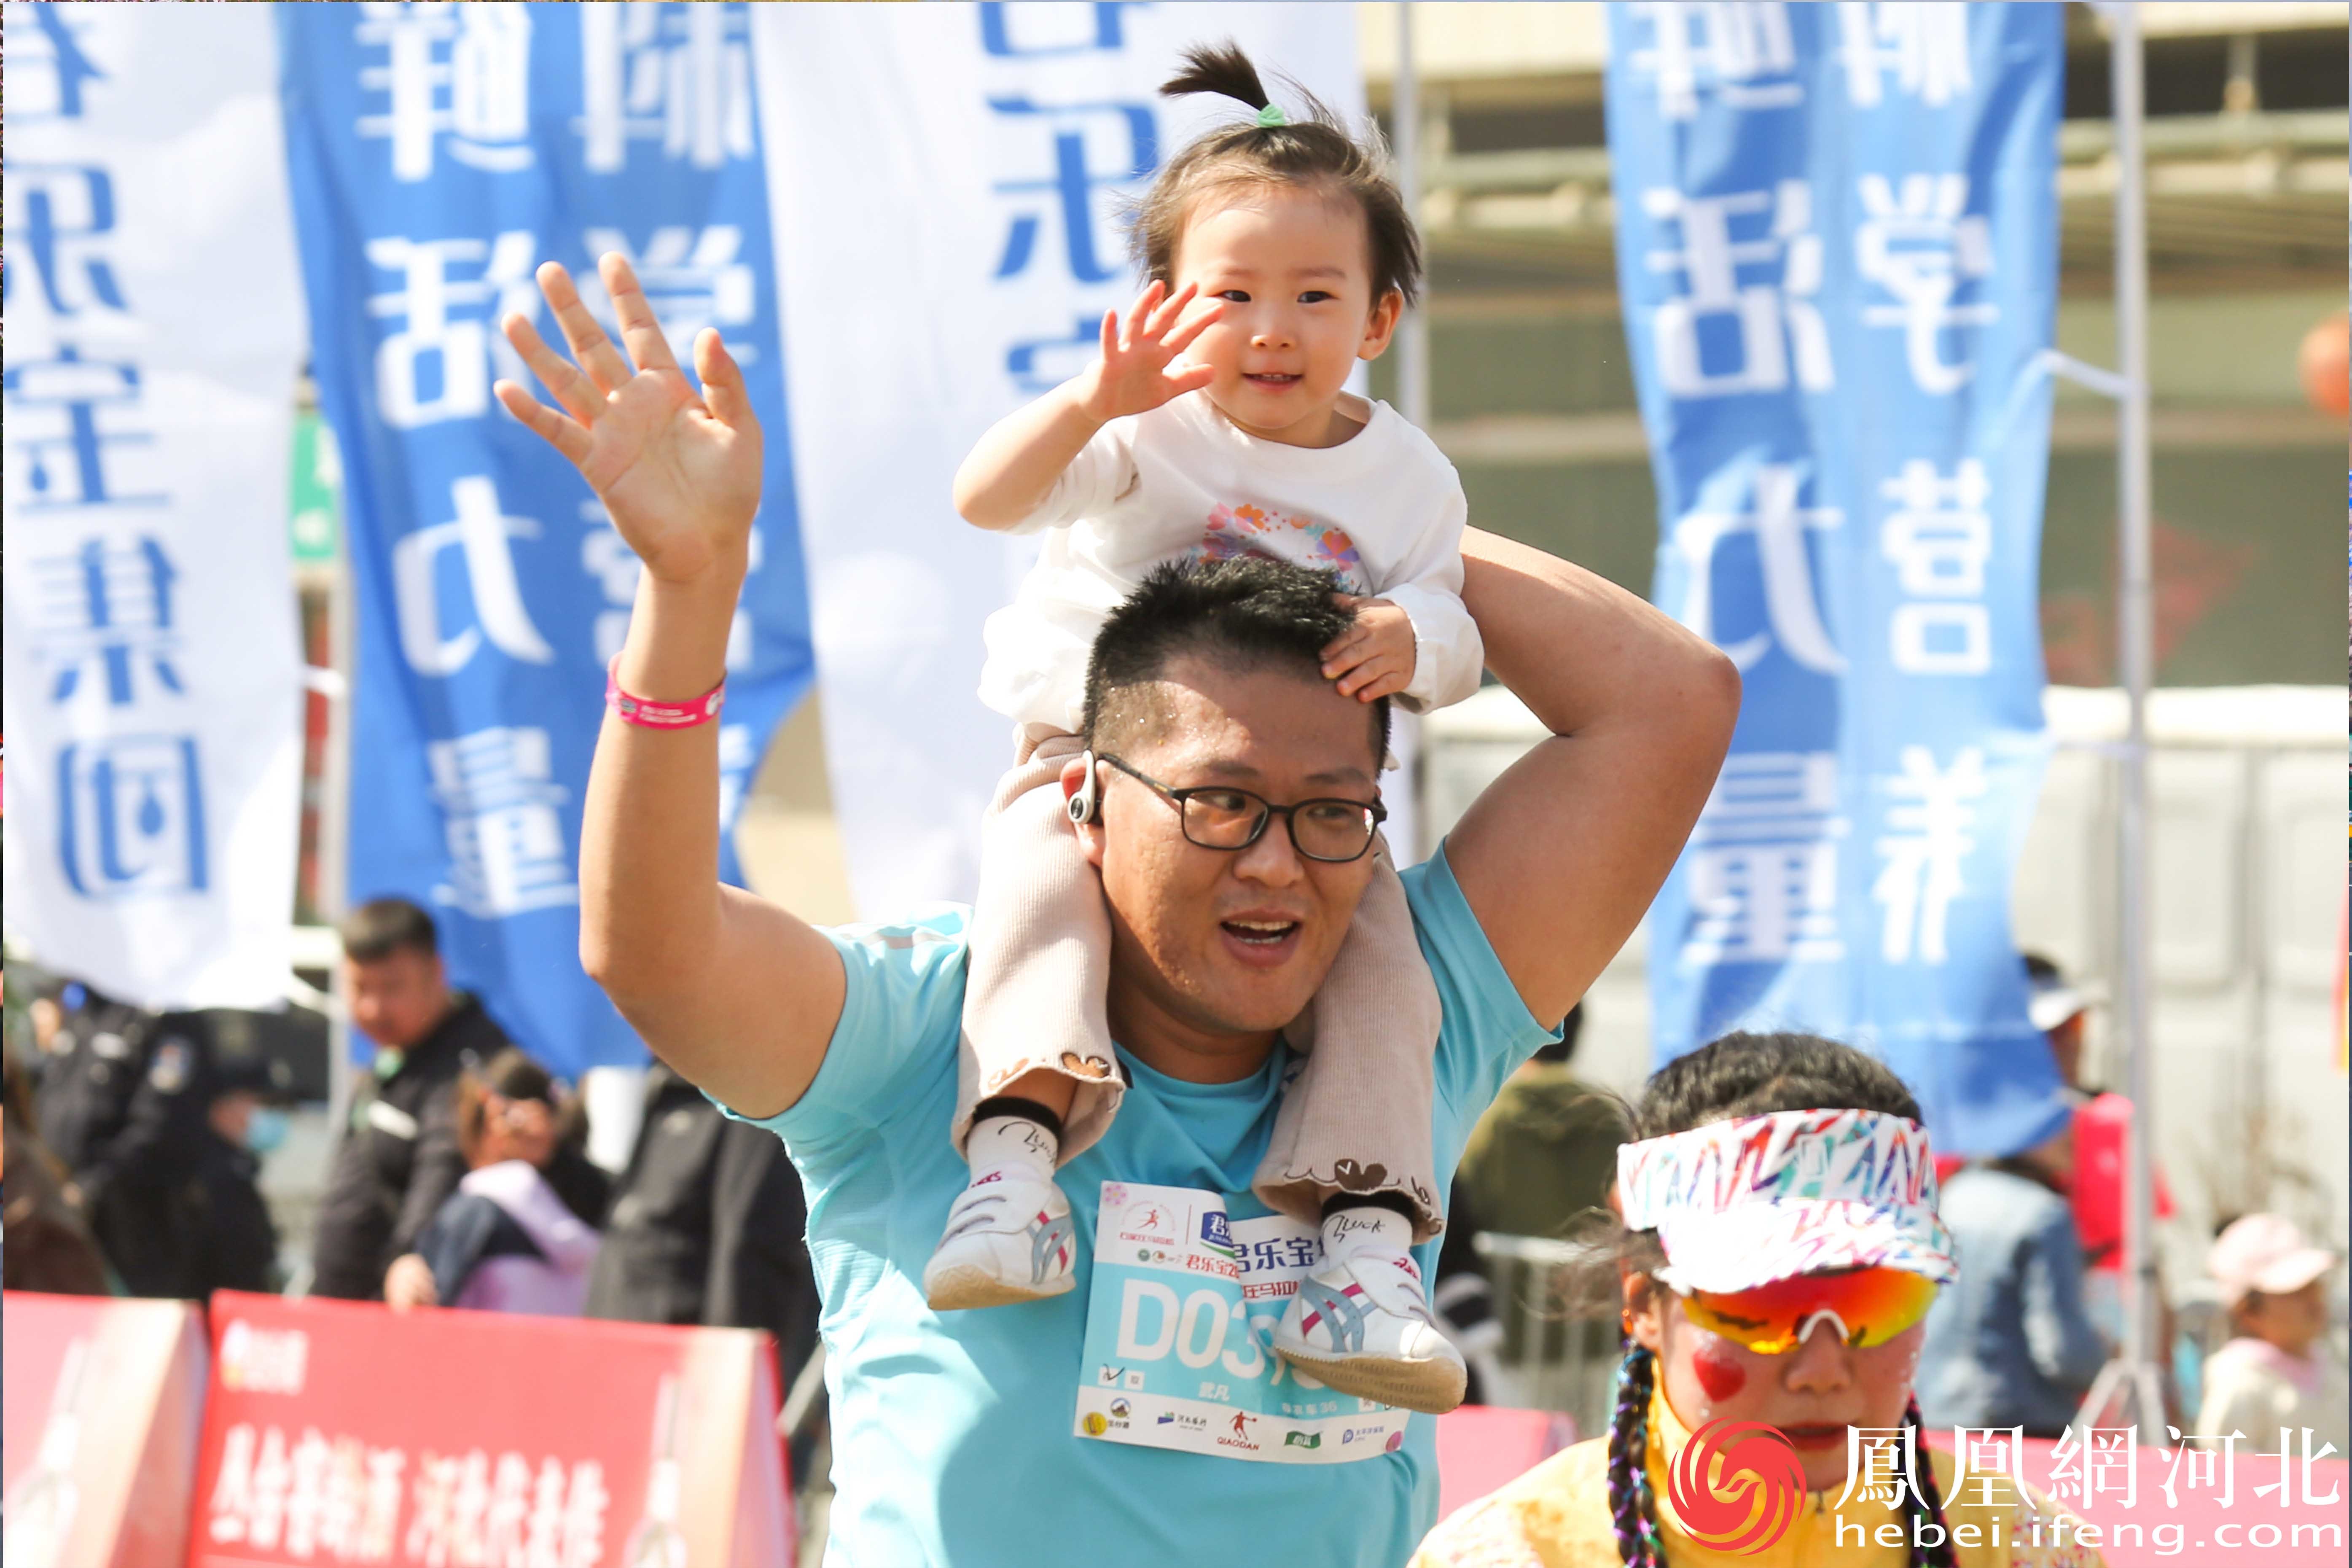 在马拉松赛道上，一位父亲背着女儿奔跑着，孩子脸上洋溢着幸福的微笑。